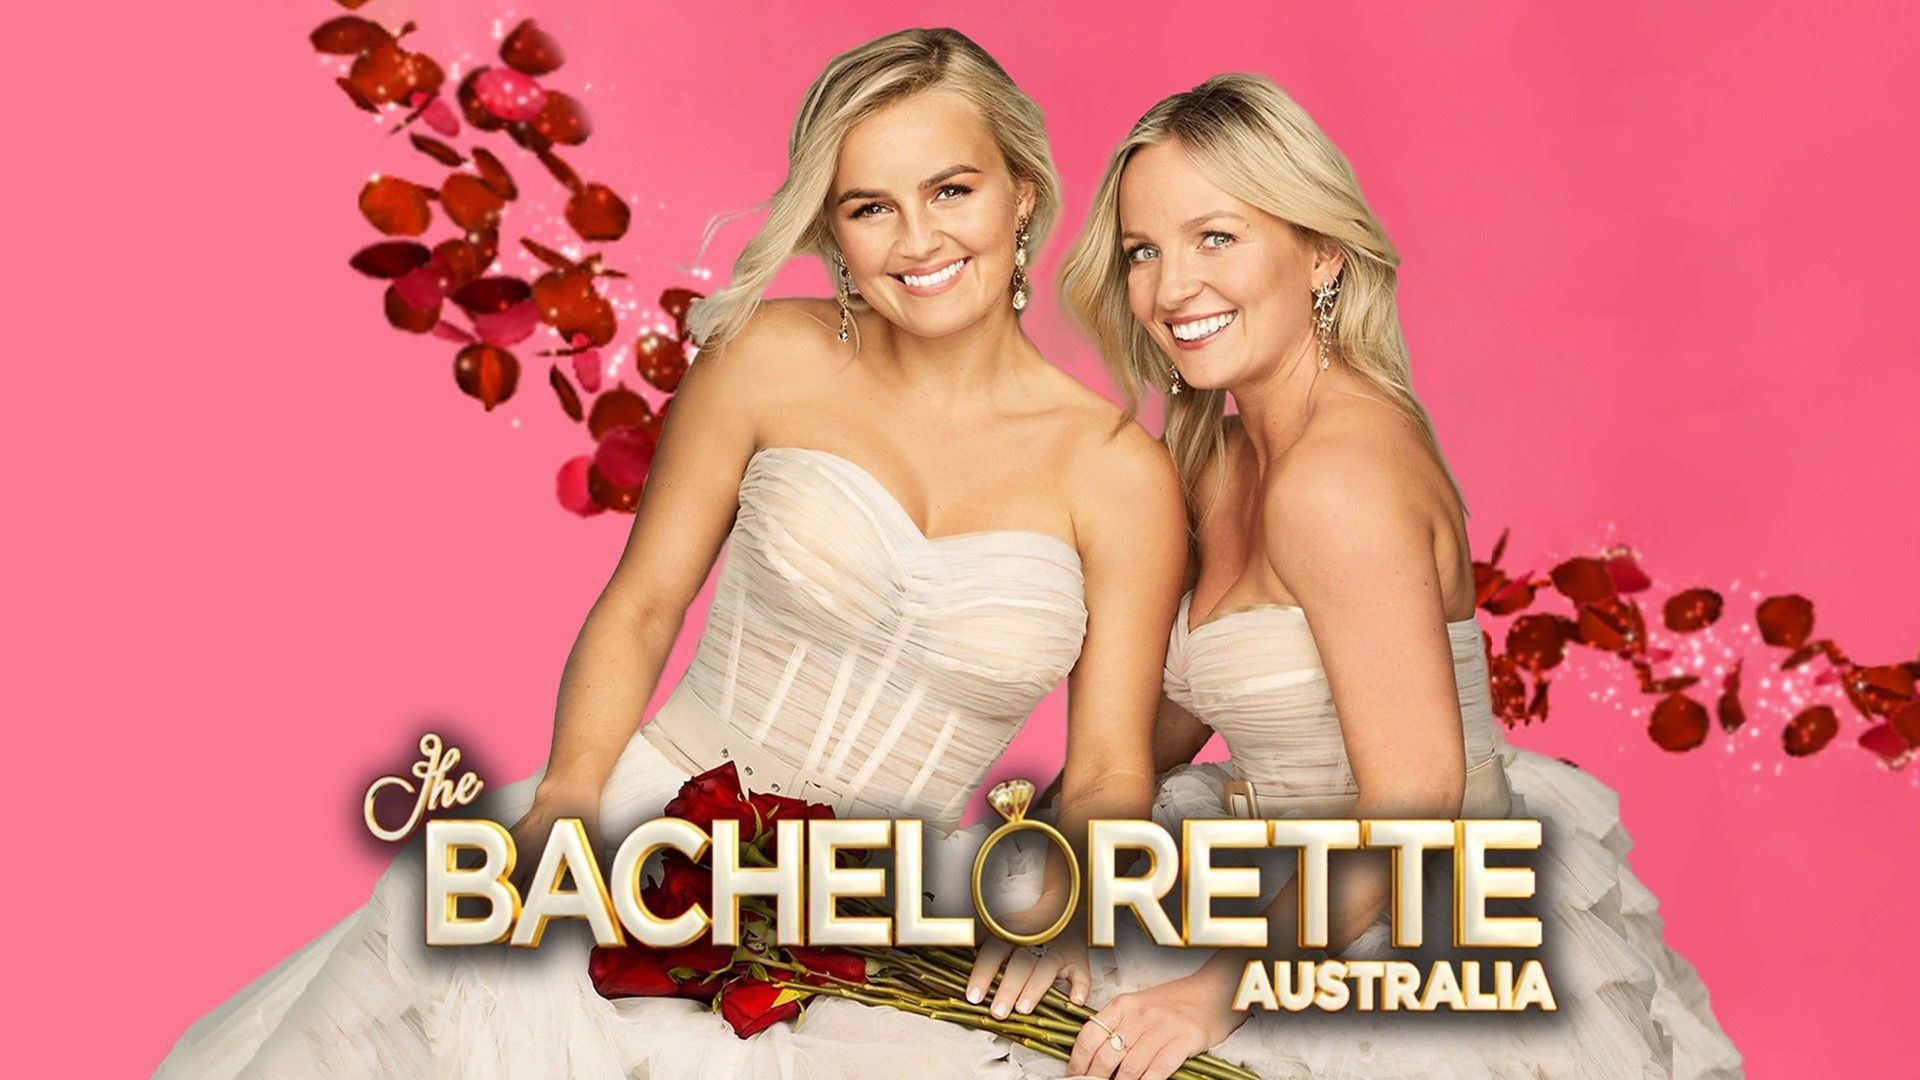 The Bachelorette Australia background